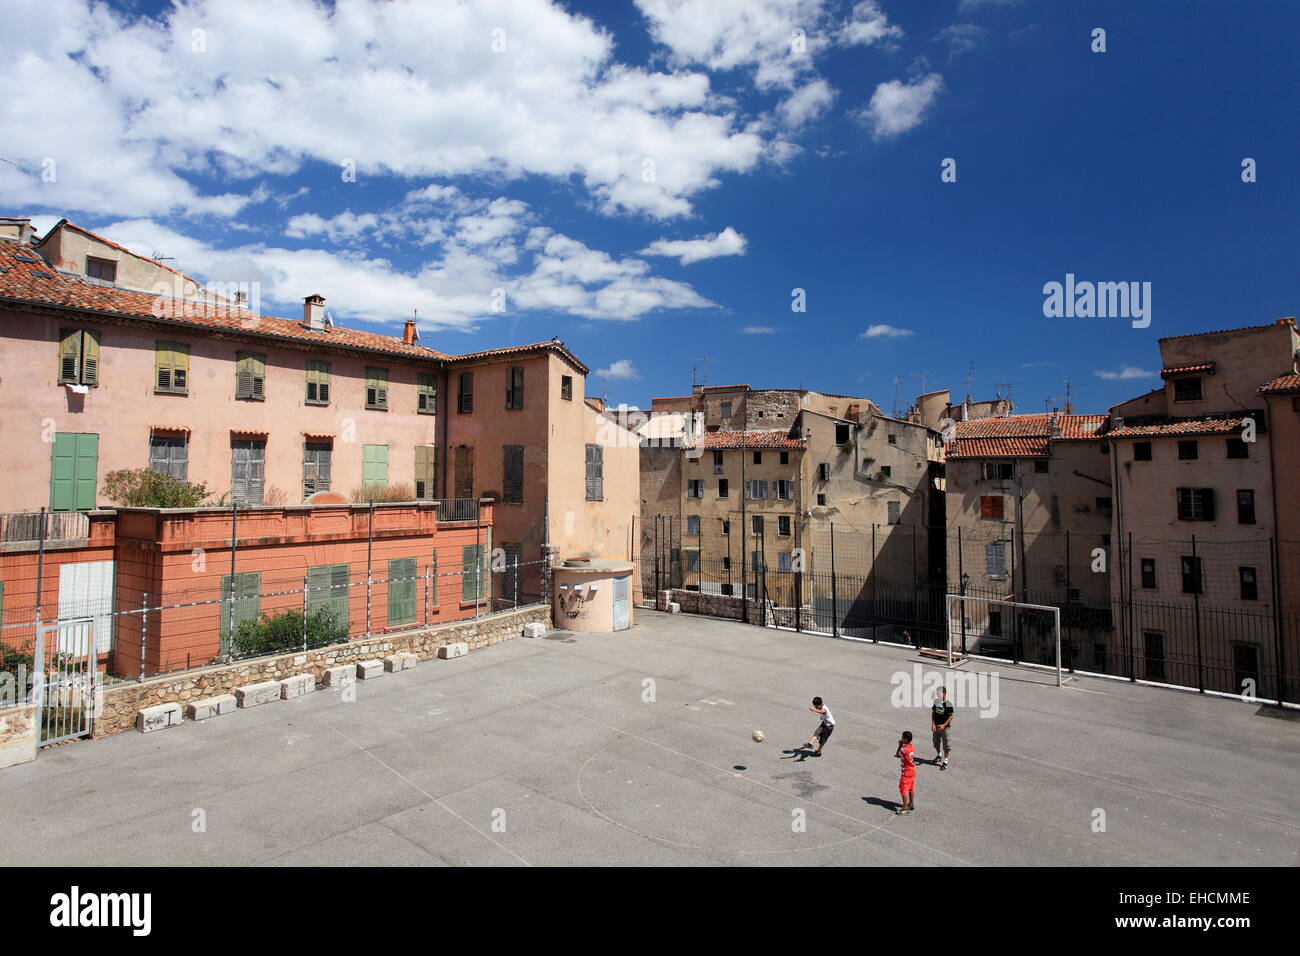 Les enfants jouent au soccer dans la ville de Grasse sur la côte d'Azur, France Banque D'Images